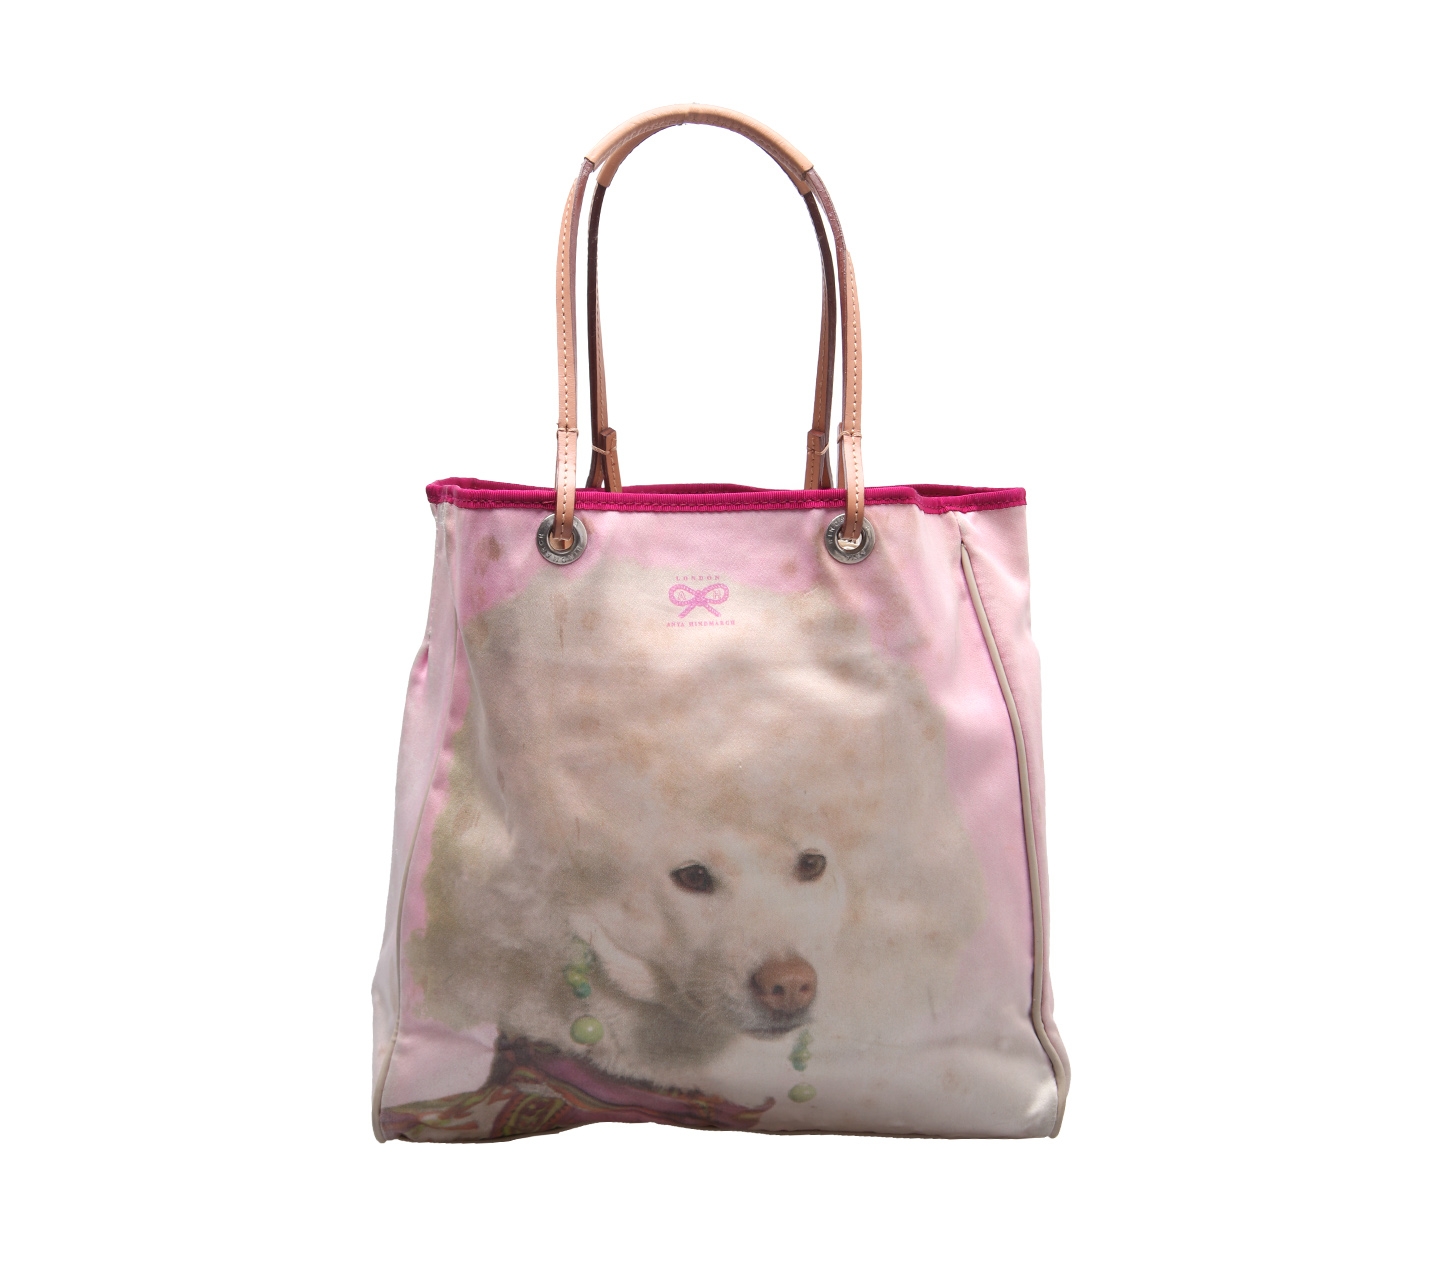 Anya Hindmarch Pink And Cream Handbag